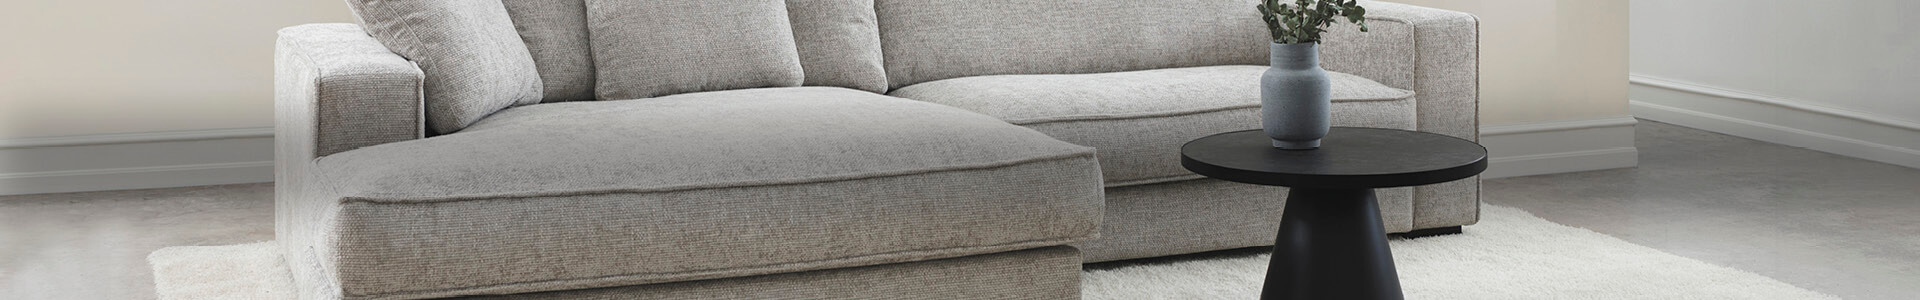 Flyder sofa udvalg af flyder sofaer | Møblér